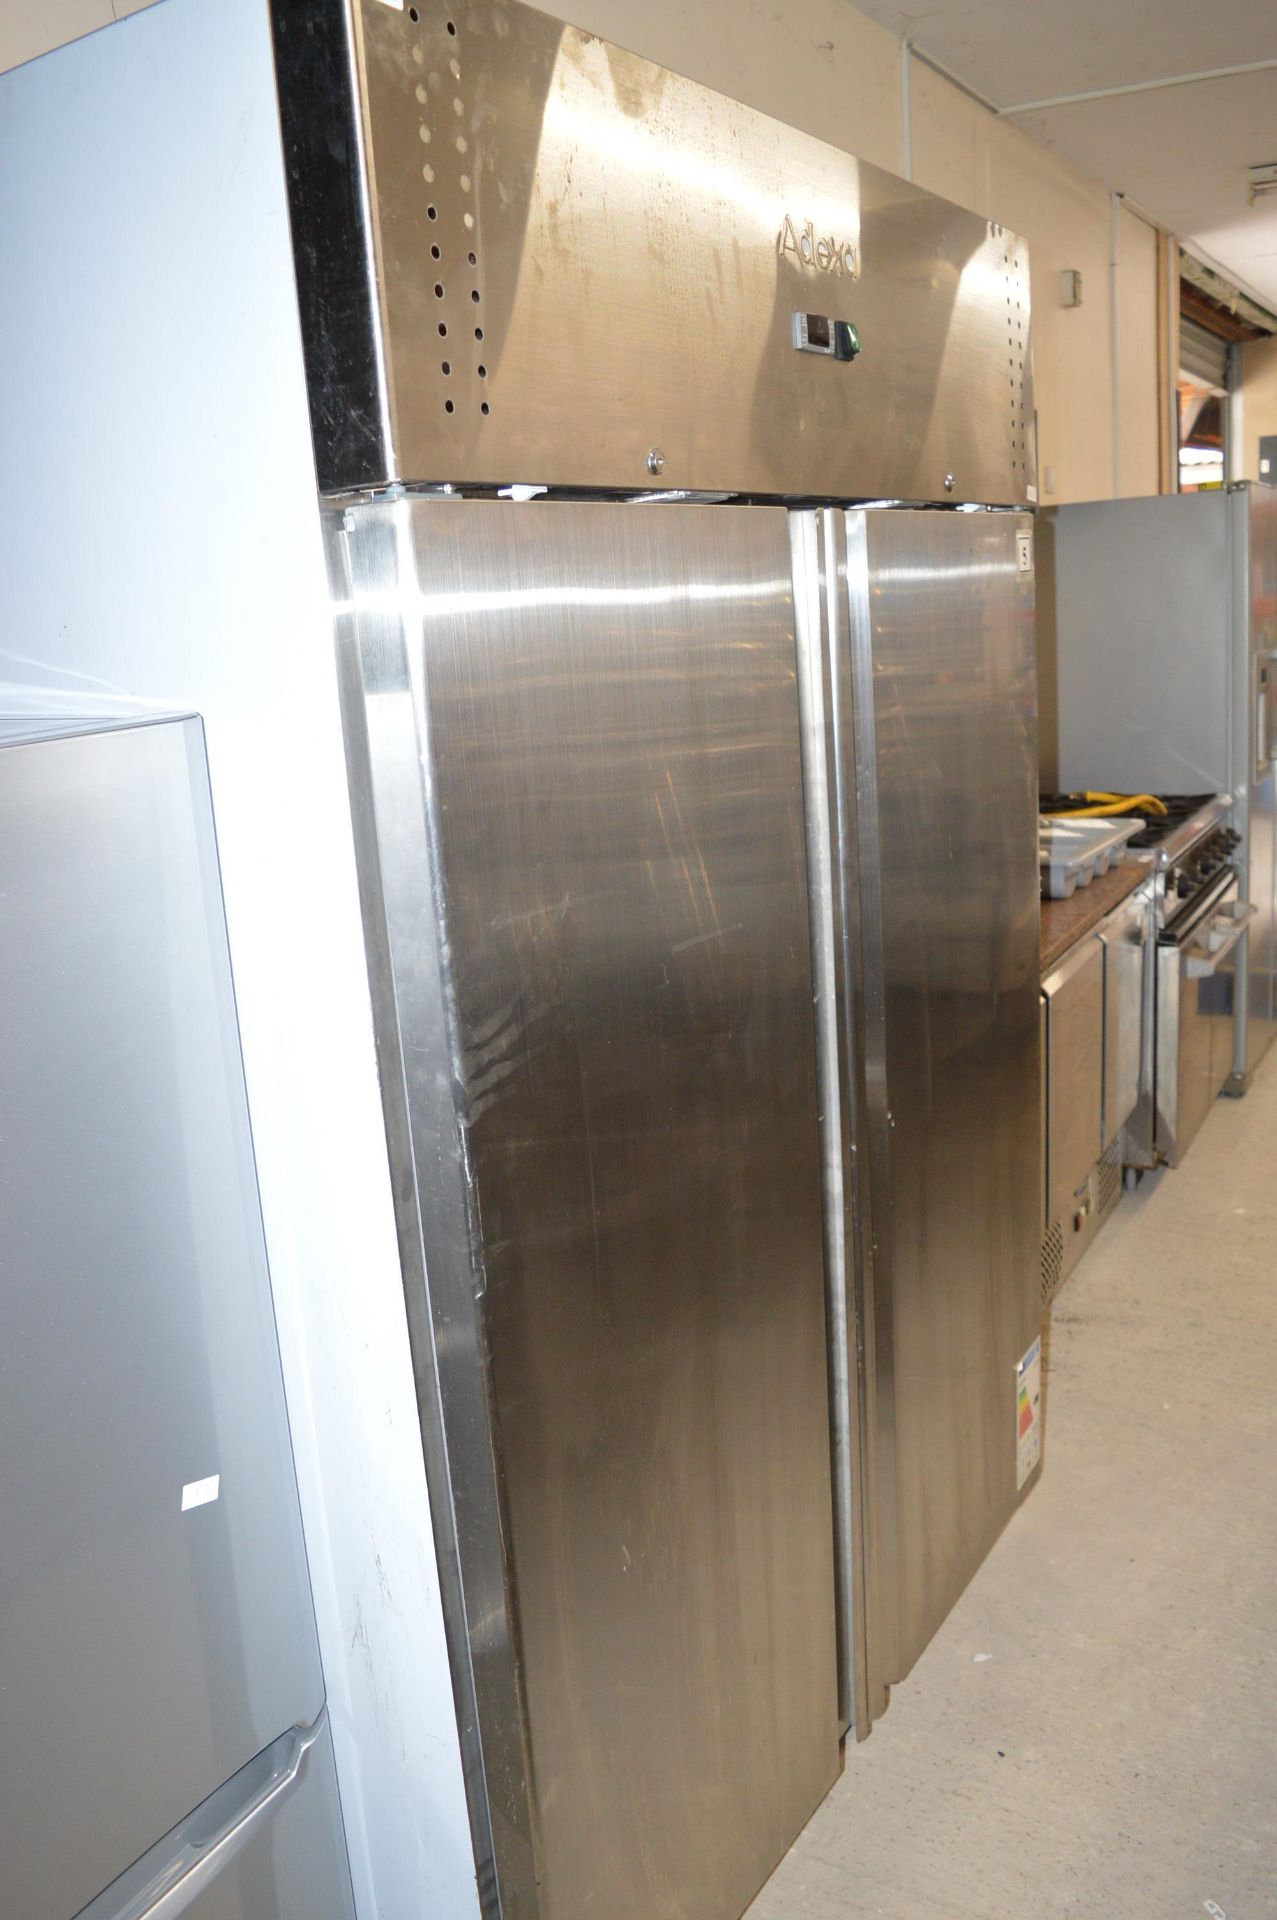 *Adexa Stainless Steel Double Door Refrigerator Model: F1200S